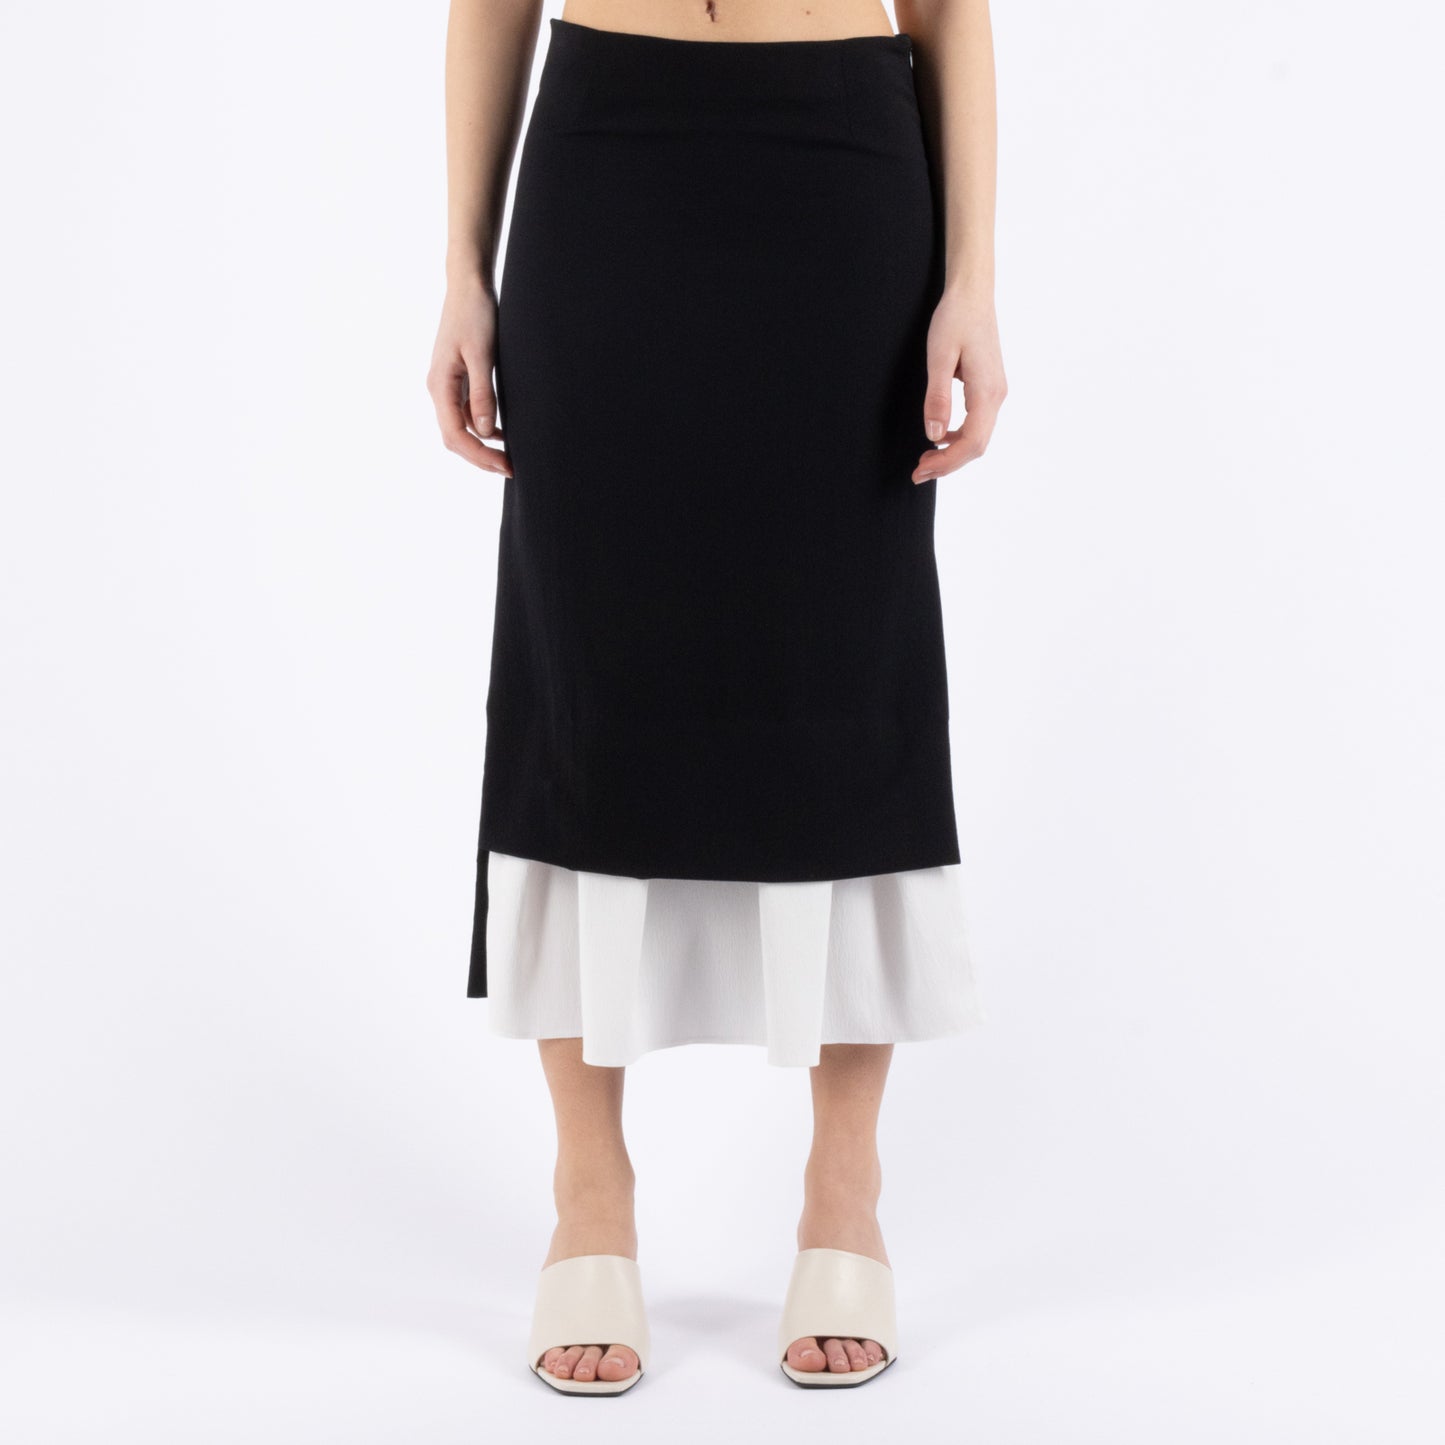 Treviso skirt The Garment